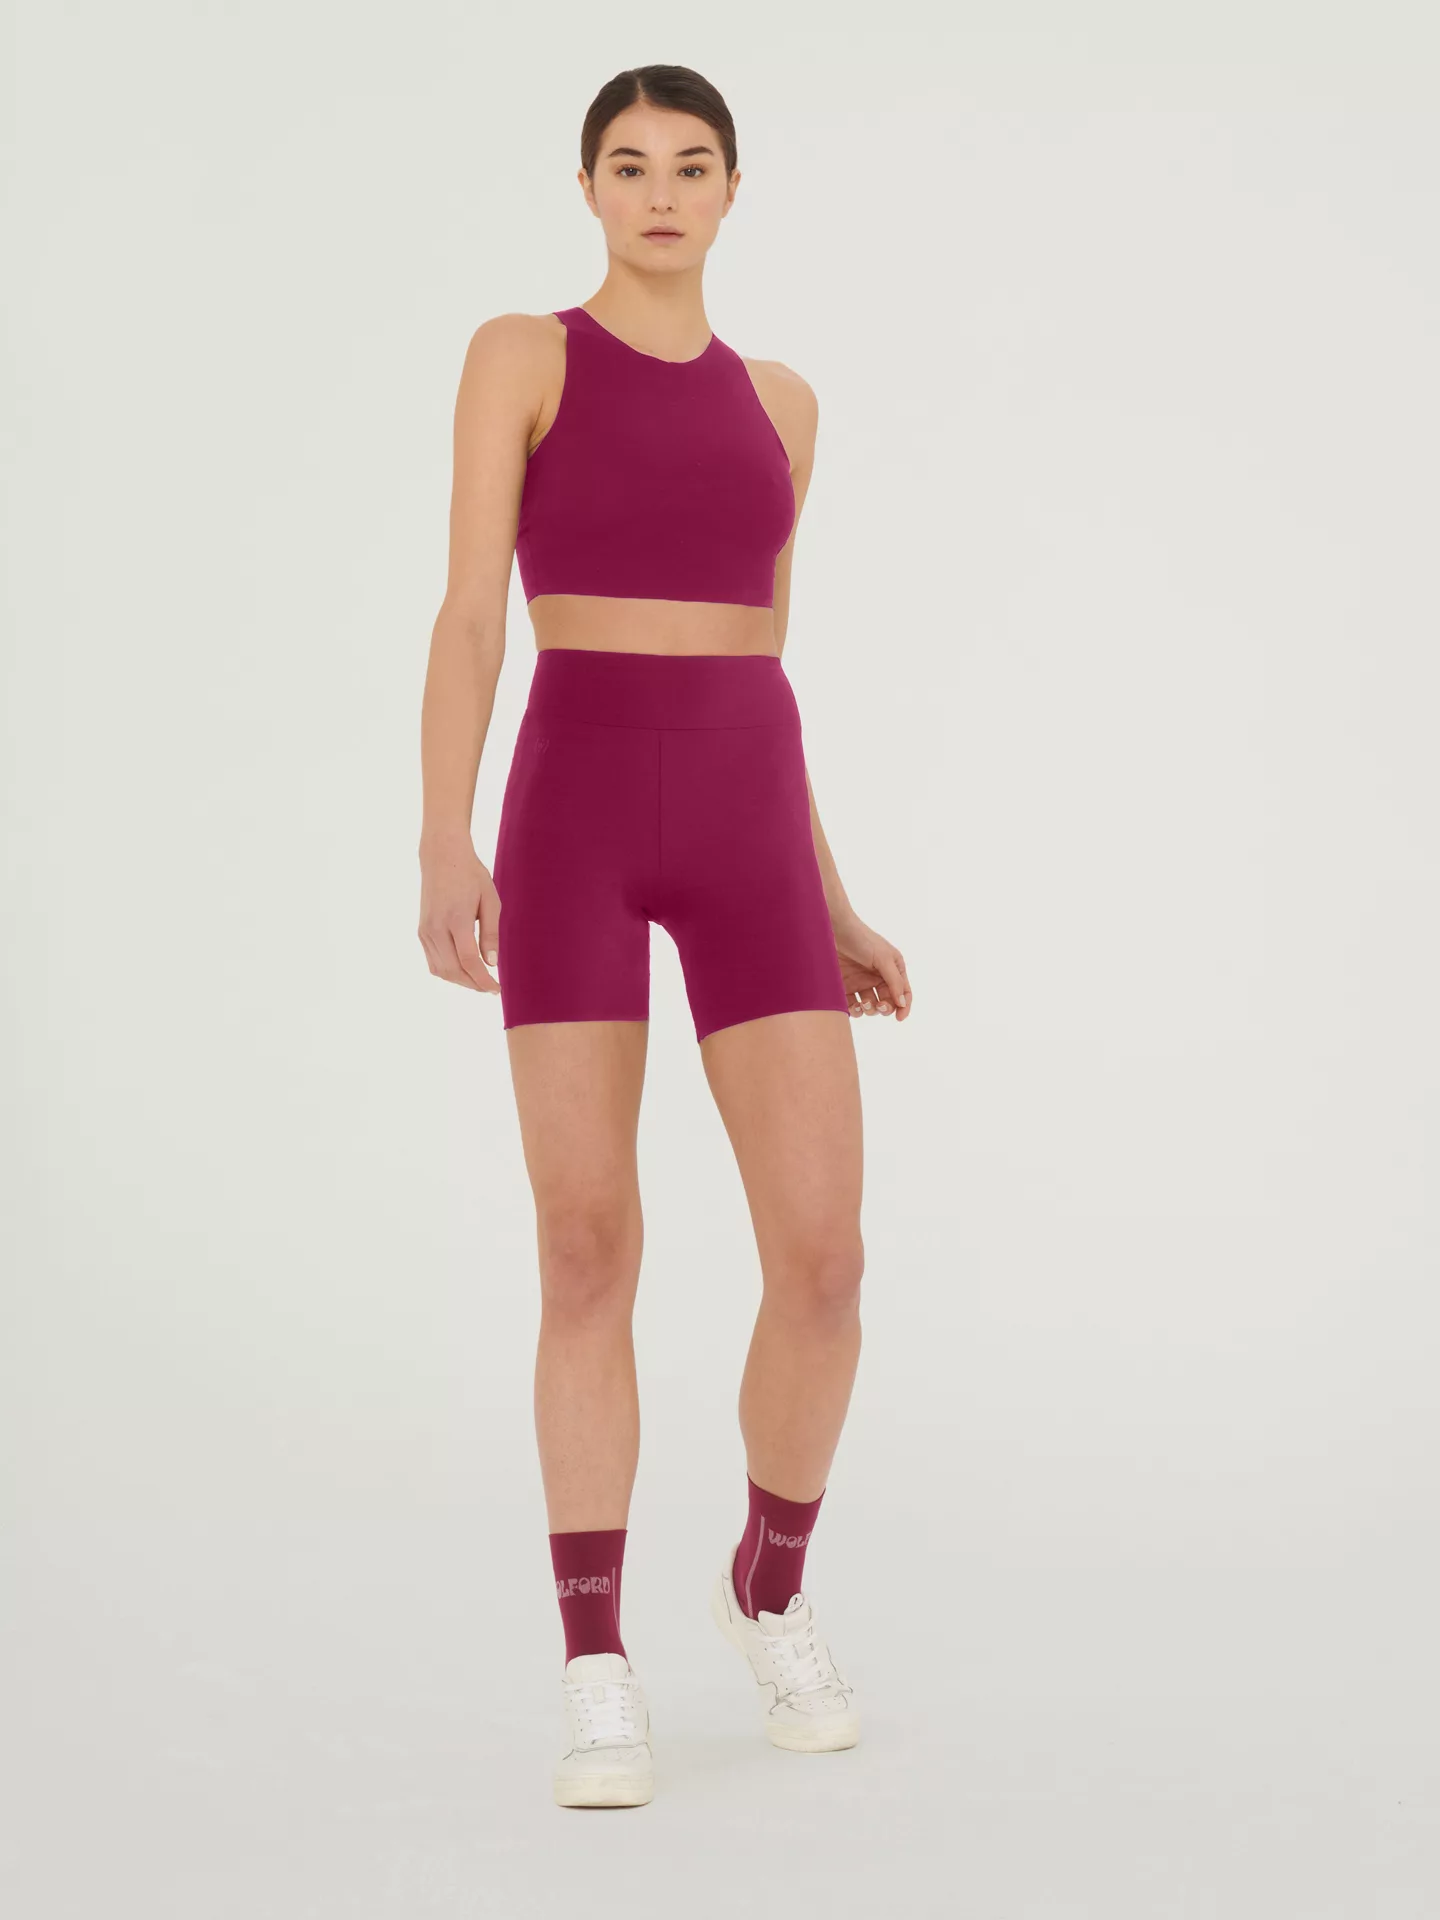 Wolford - The Workout Shorts, Frau, mineral red, Größe: XS günstig online kaufen